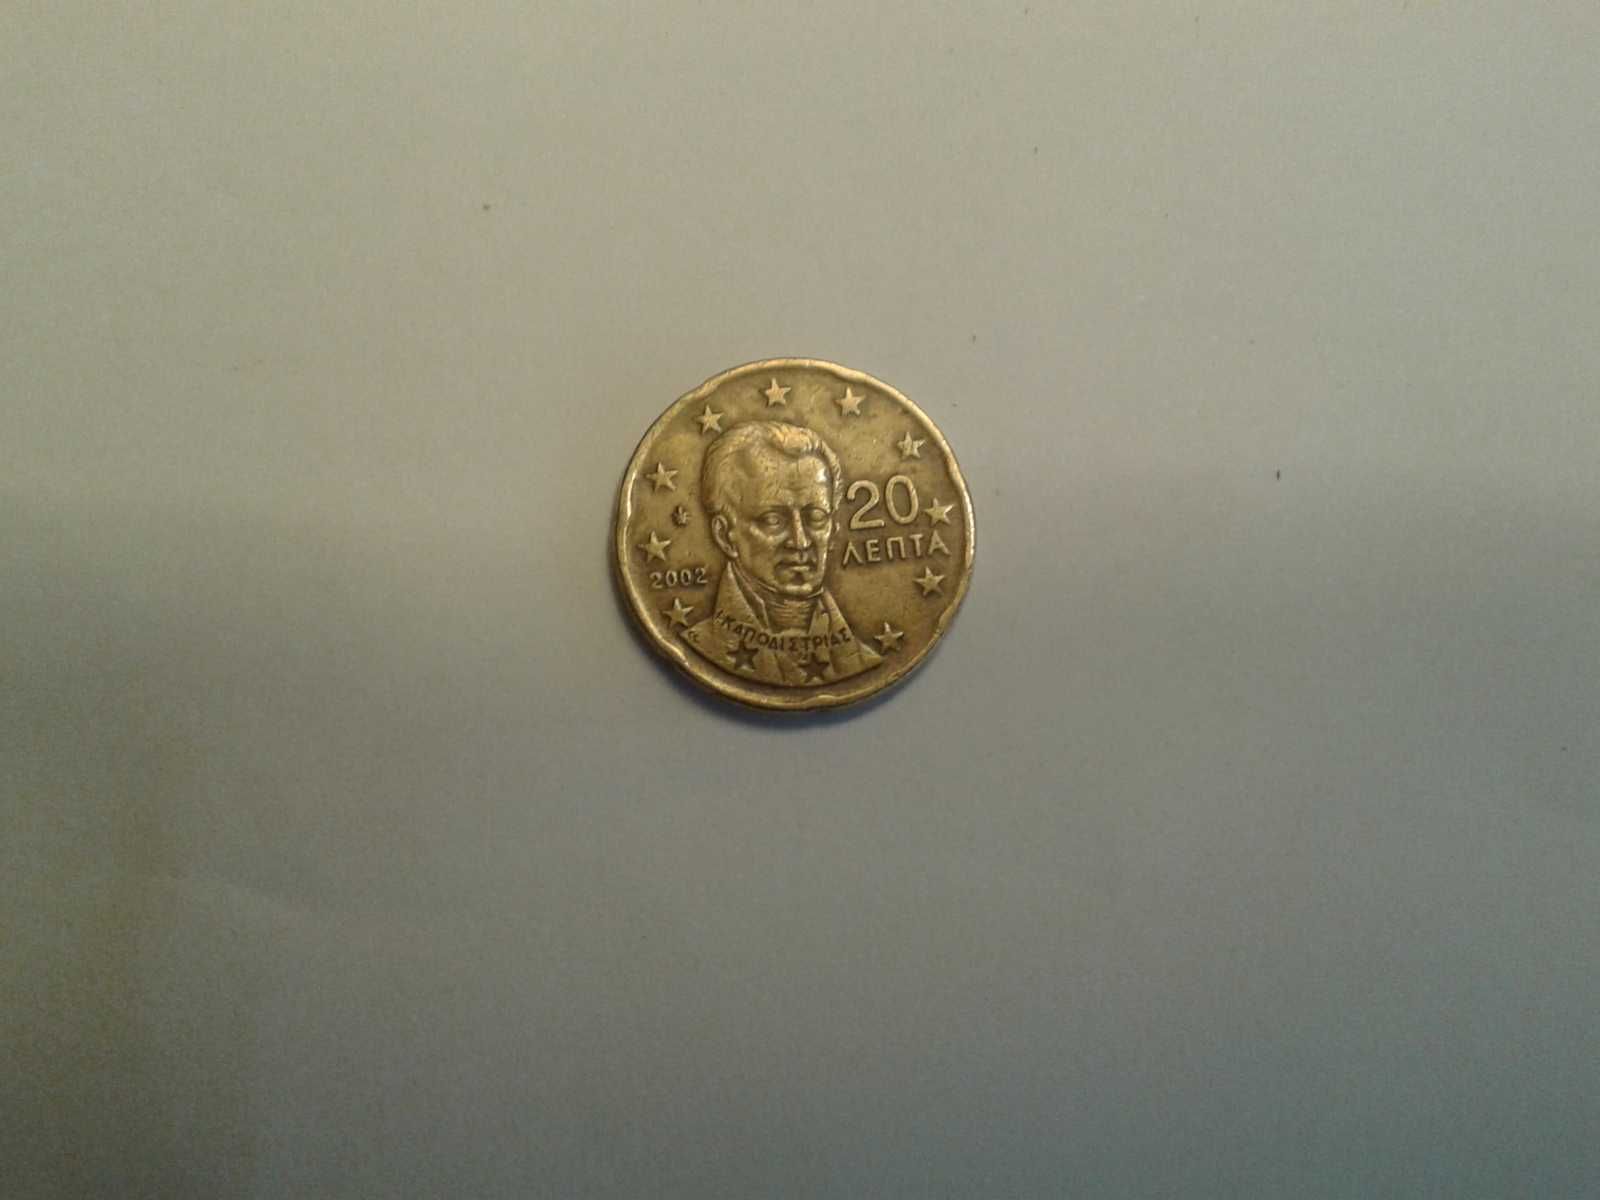 Vendo moeda de 20 centimos ano 2002